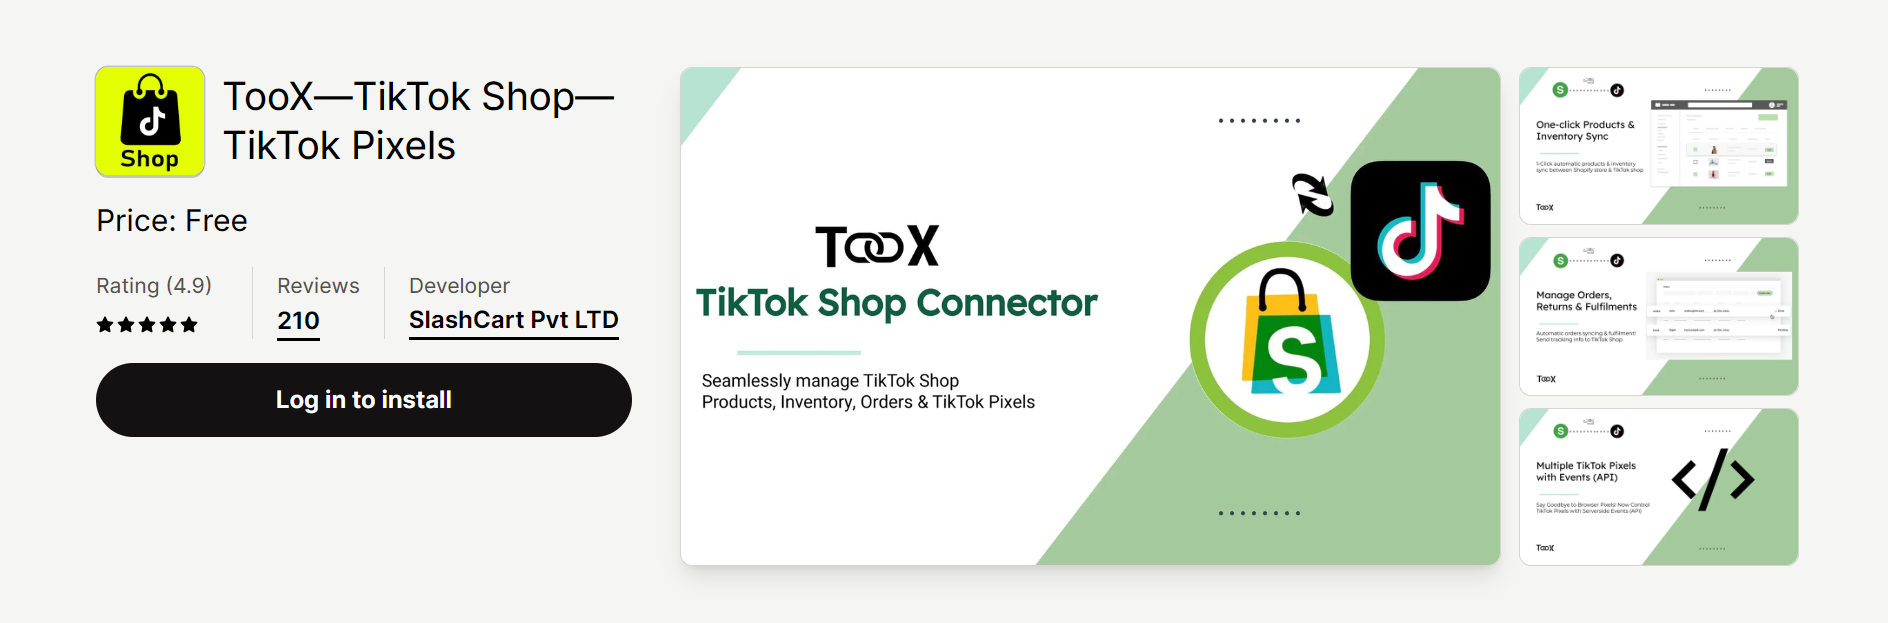 TooX—TikTok Shop—TikTok Pixels